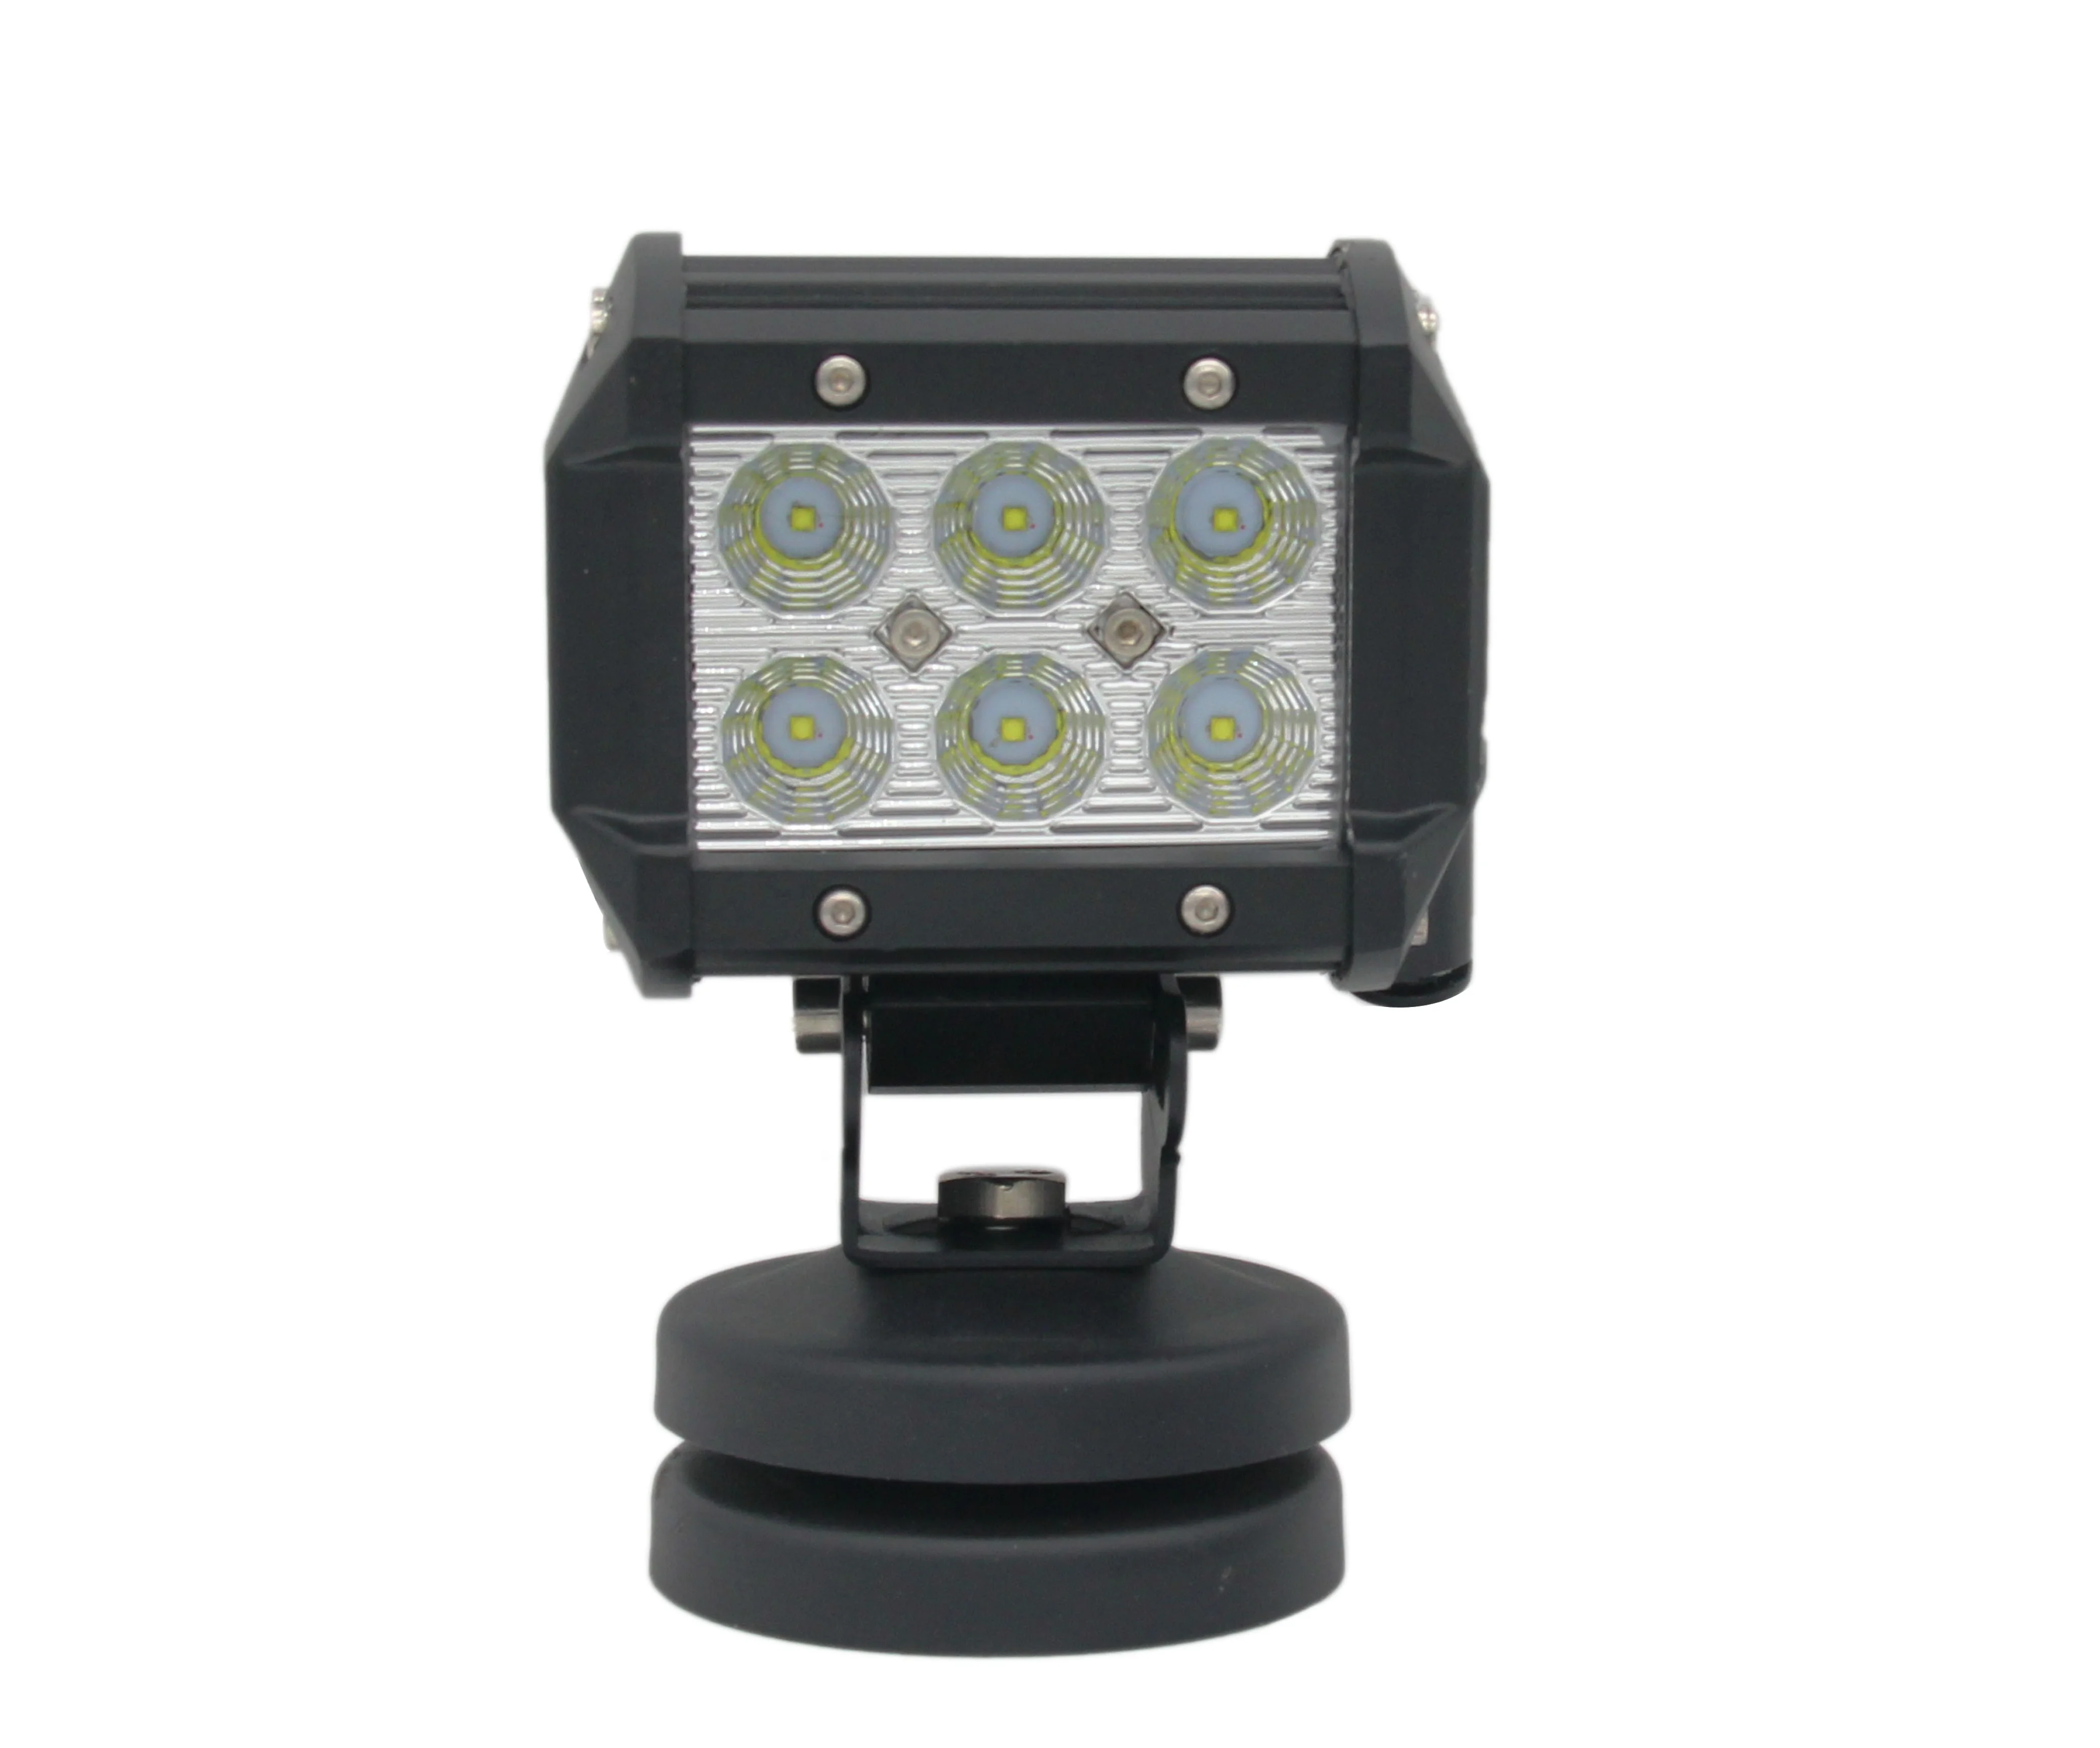 High quality 18w led work light philips 4D lens led bar lights for trucks atv utv